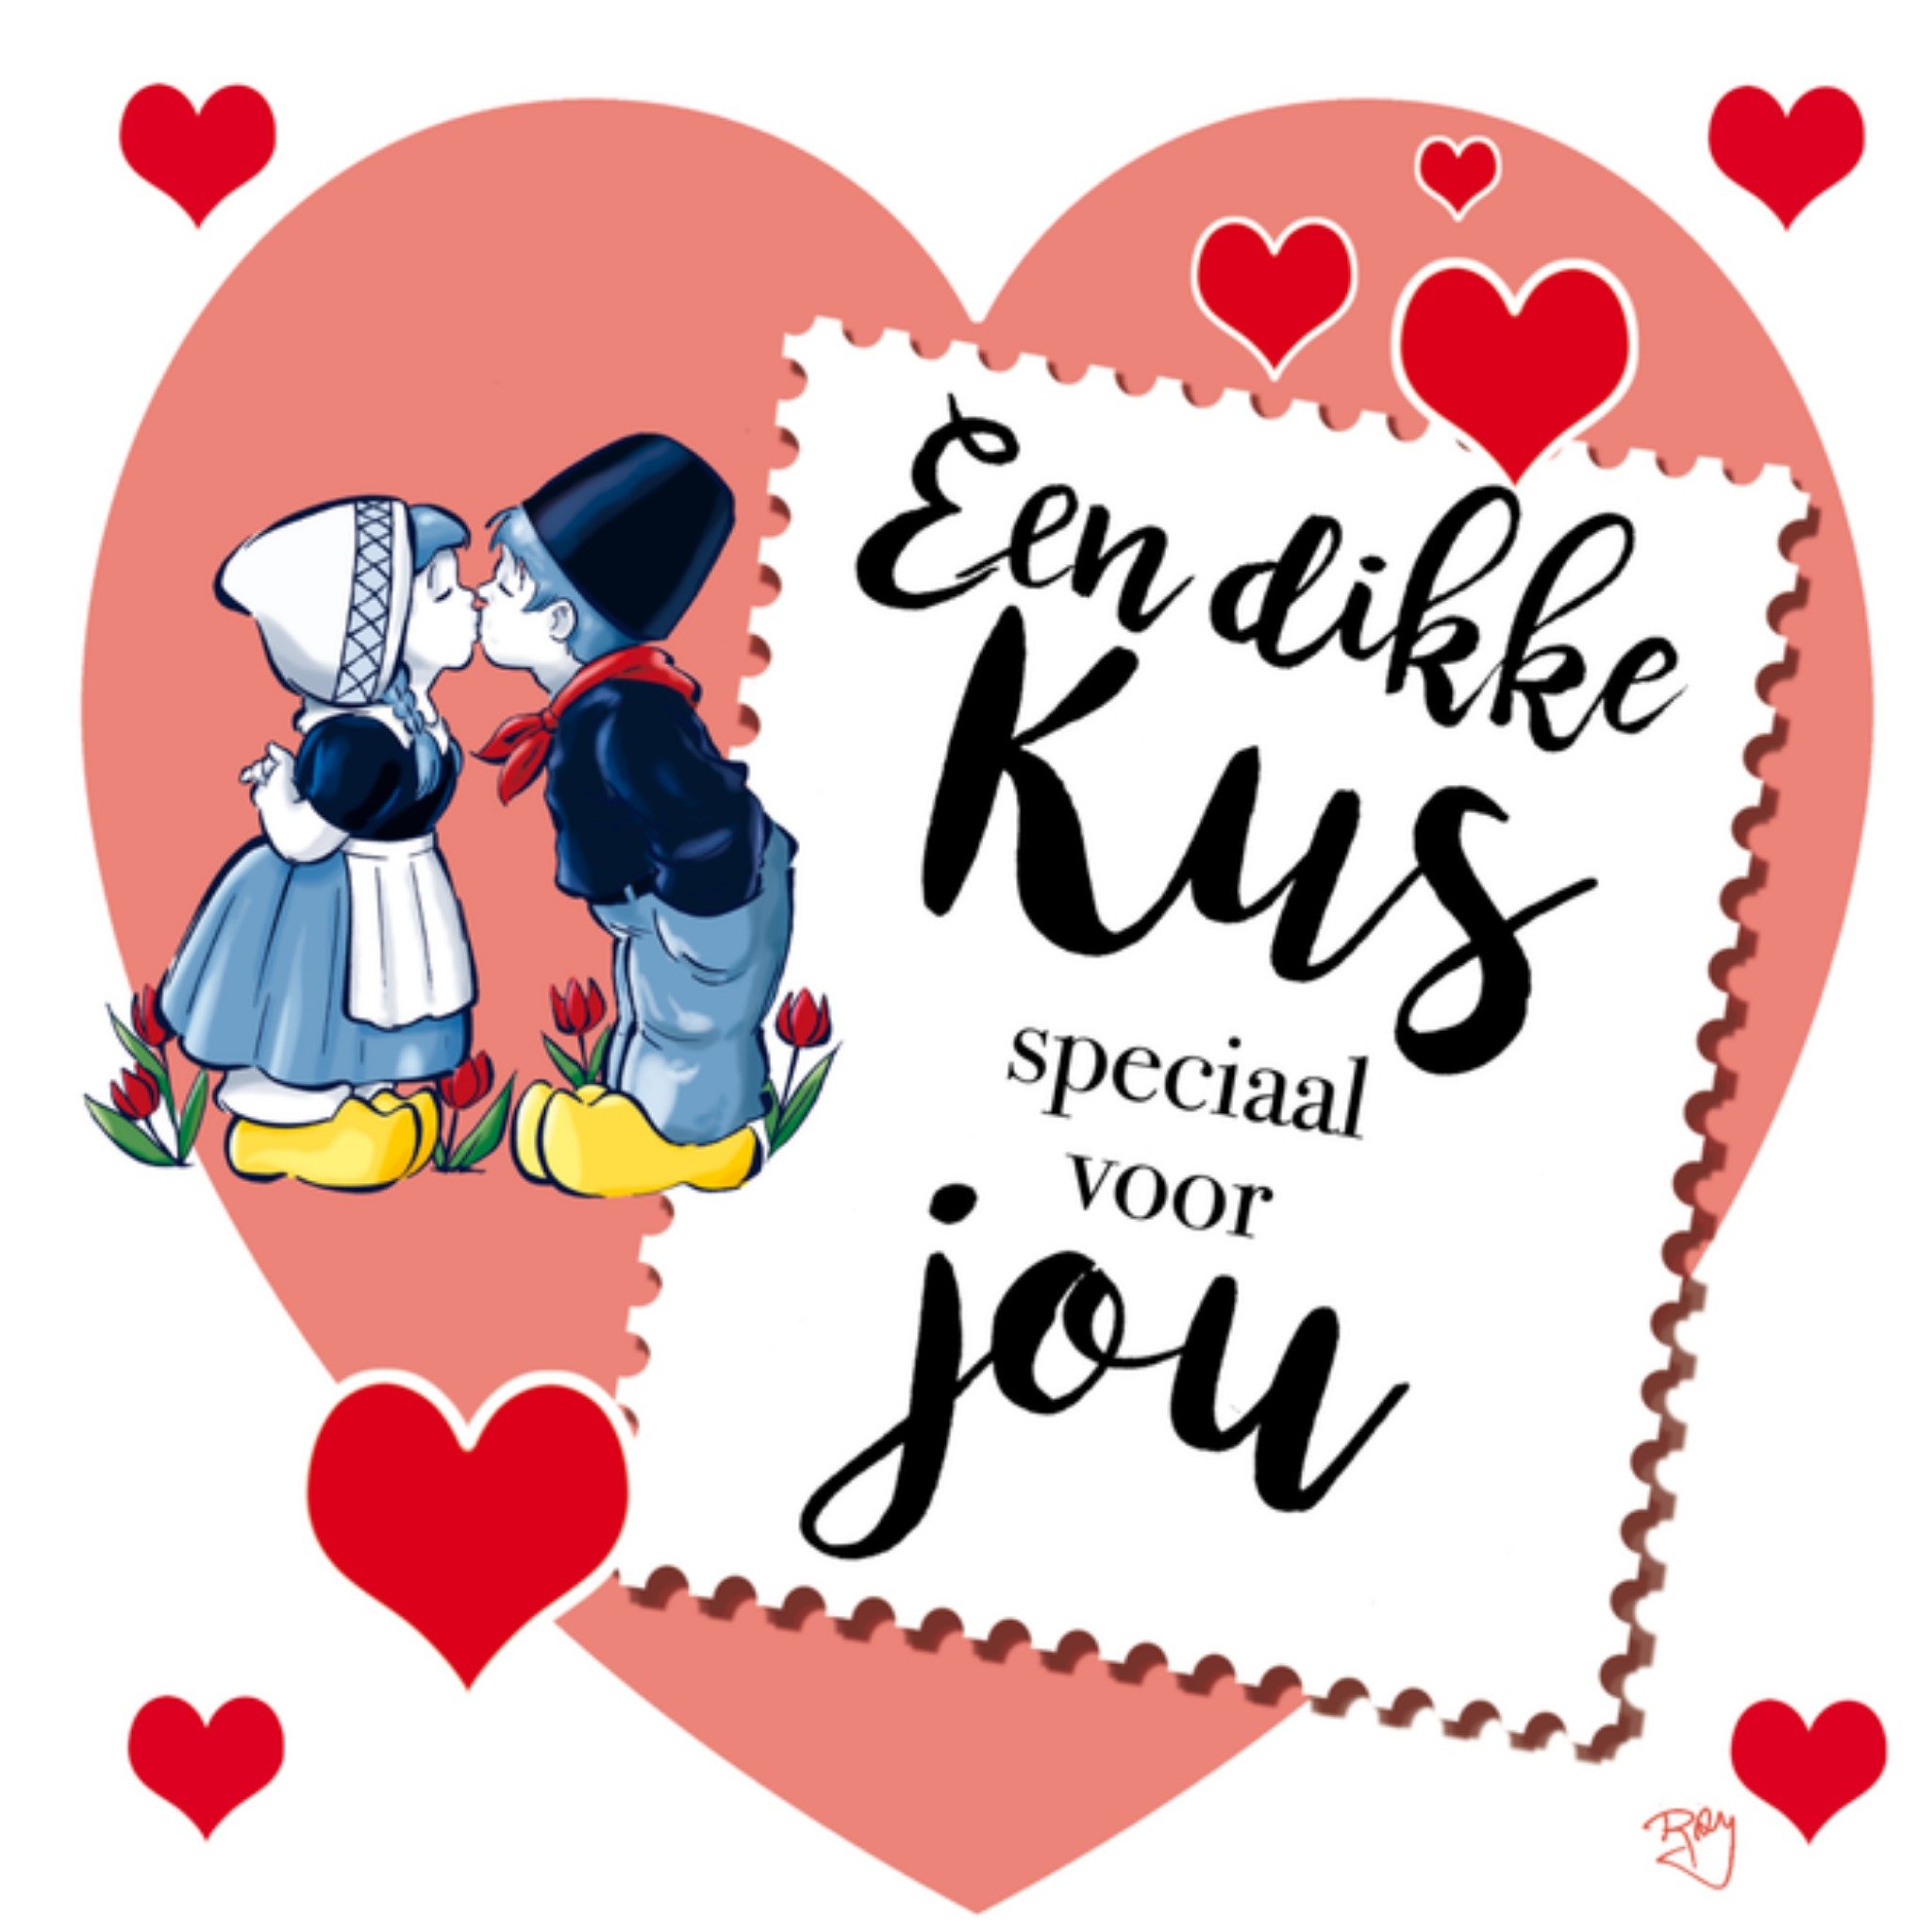 Old Dutch - Valentijnskaart - Dikke kus voor jou 68